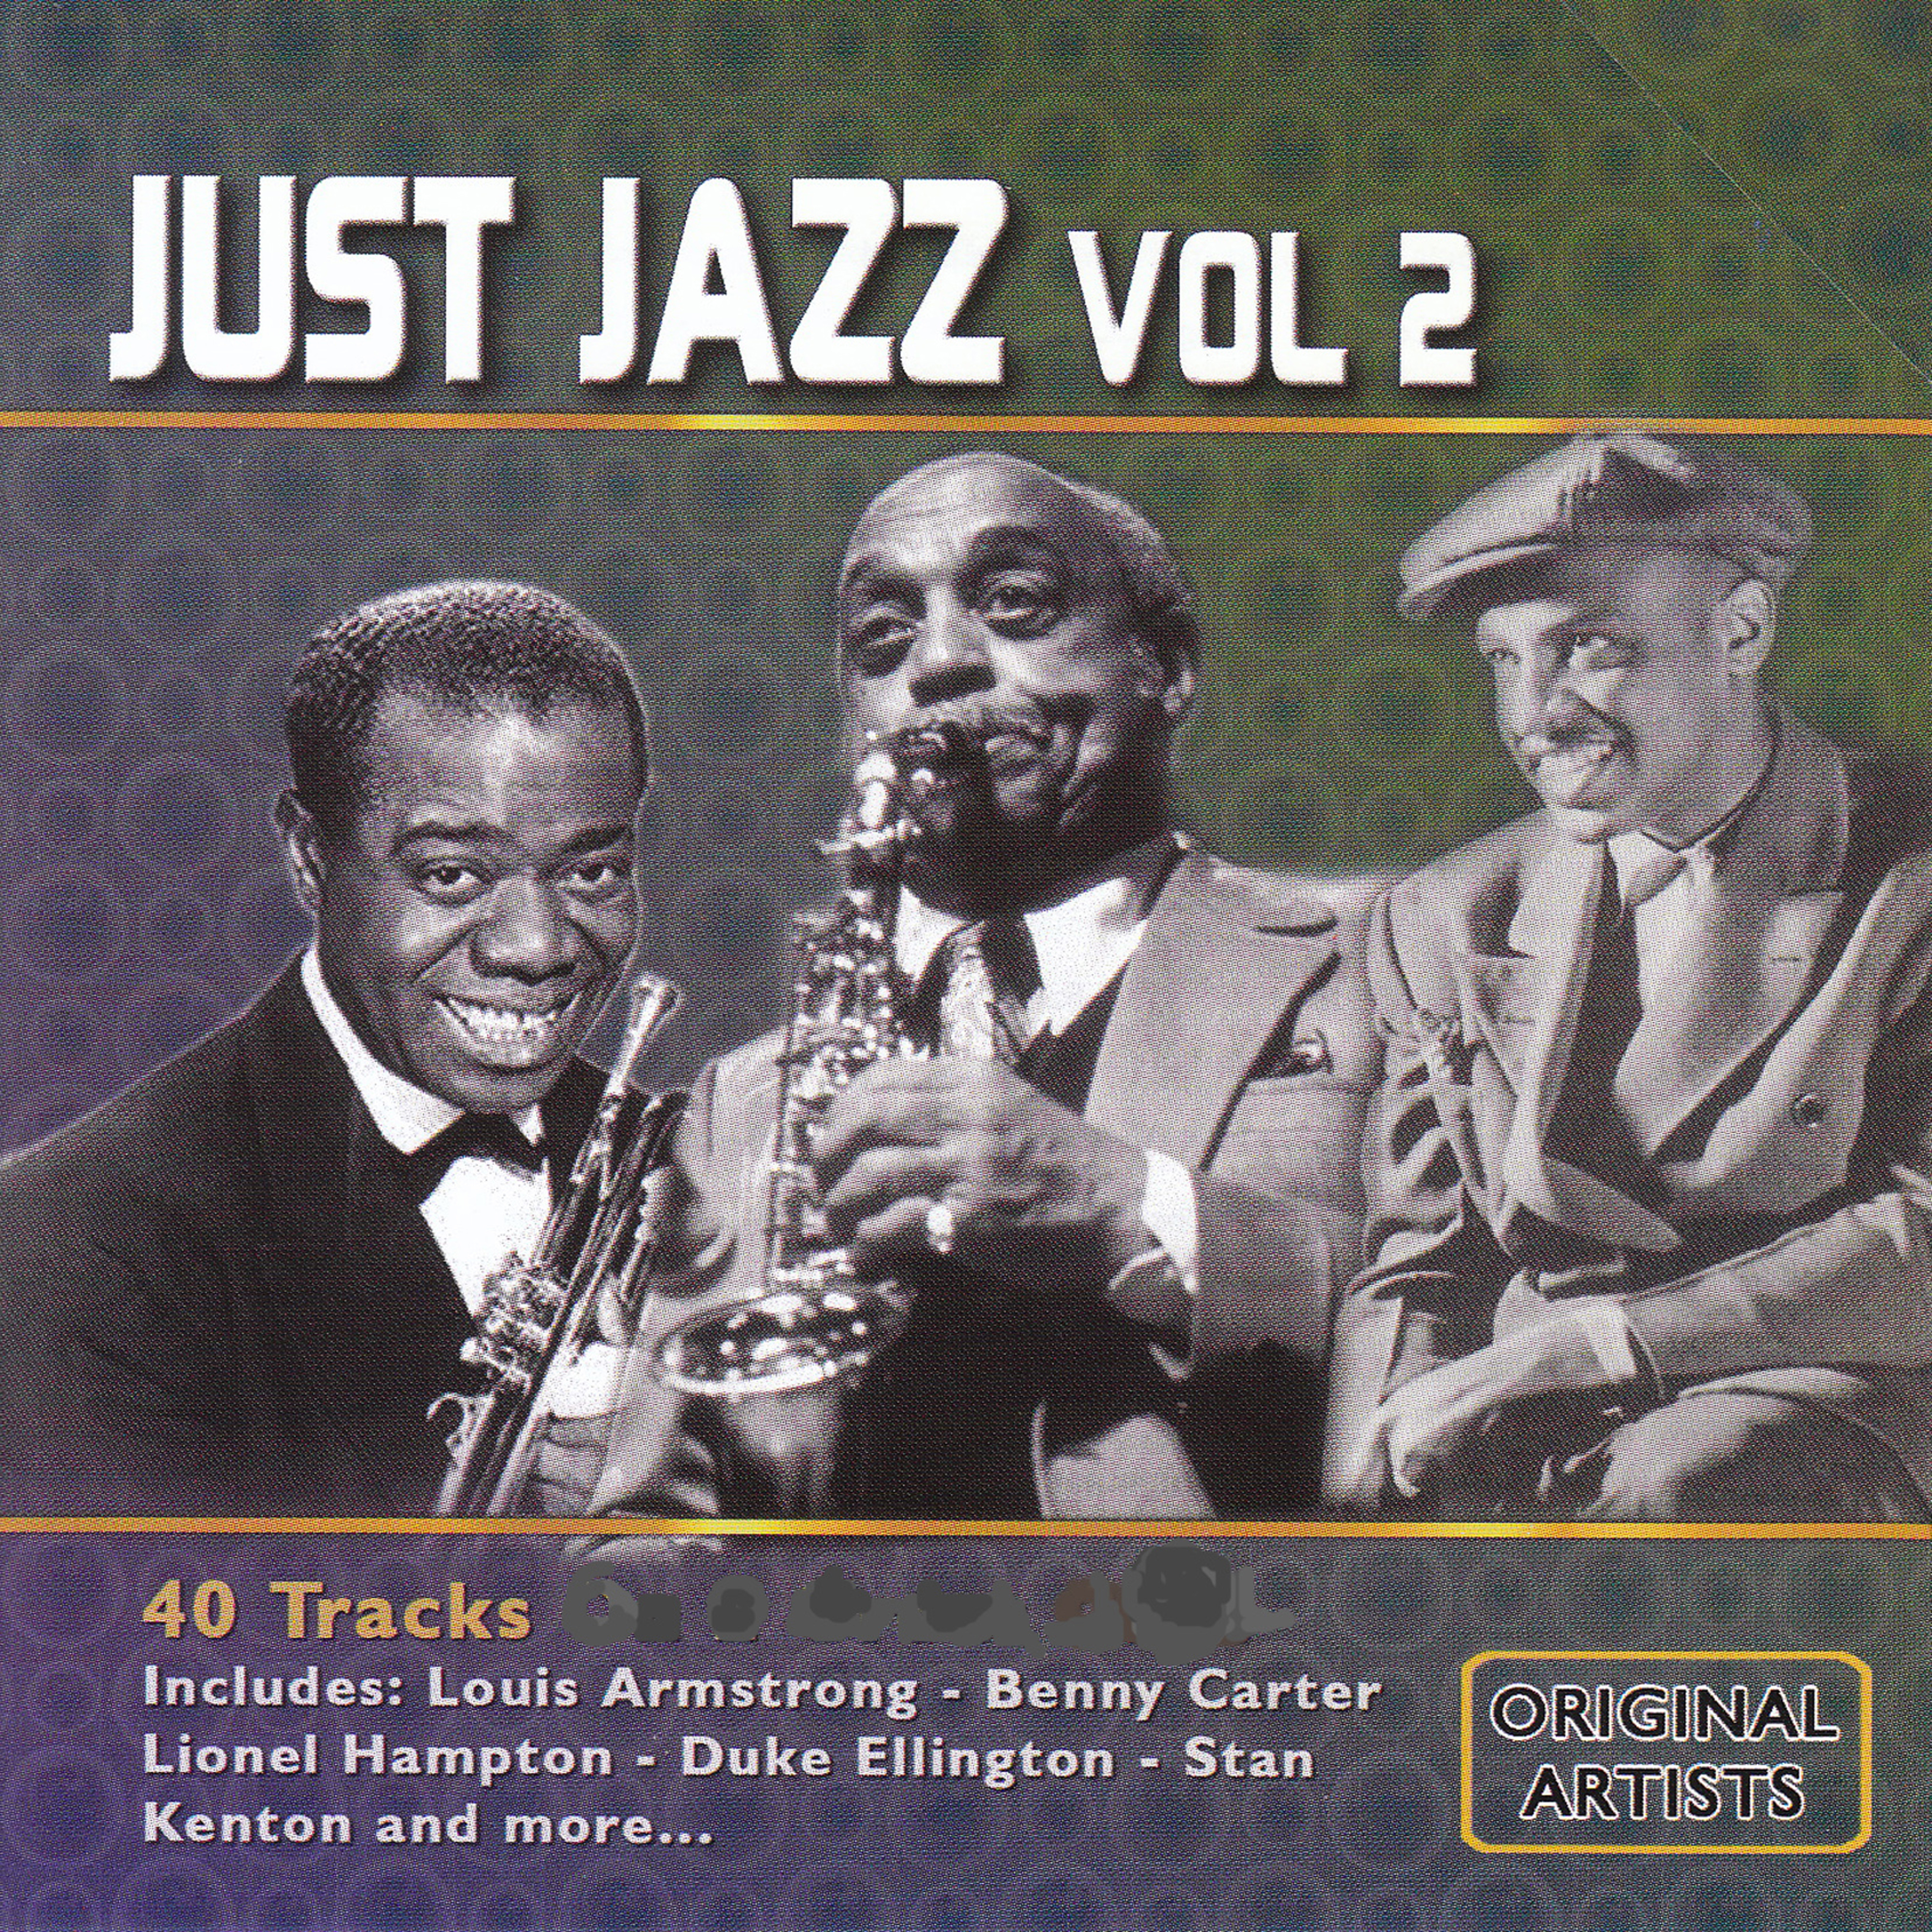 Just Jazz, Vol. 2